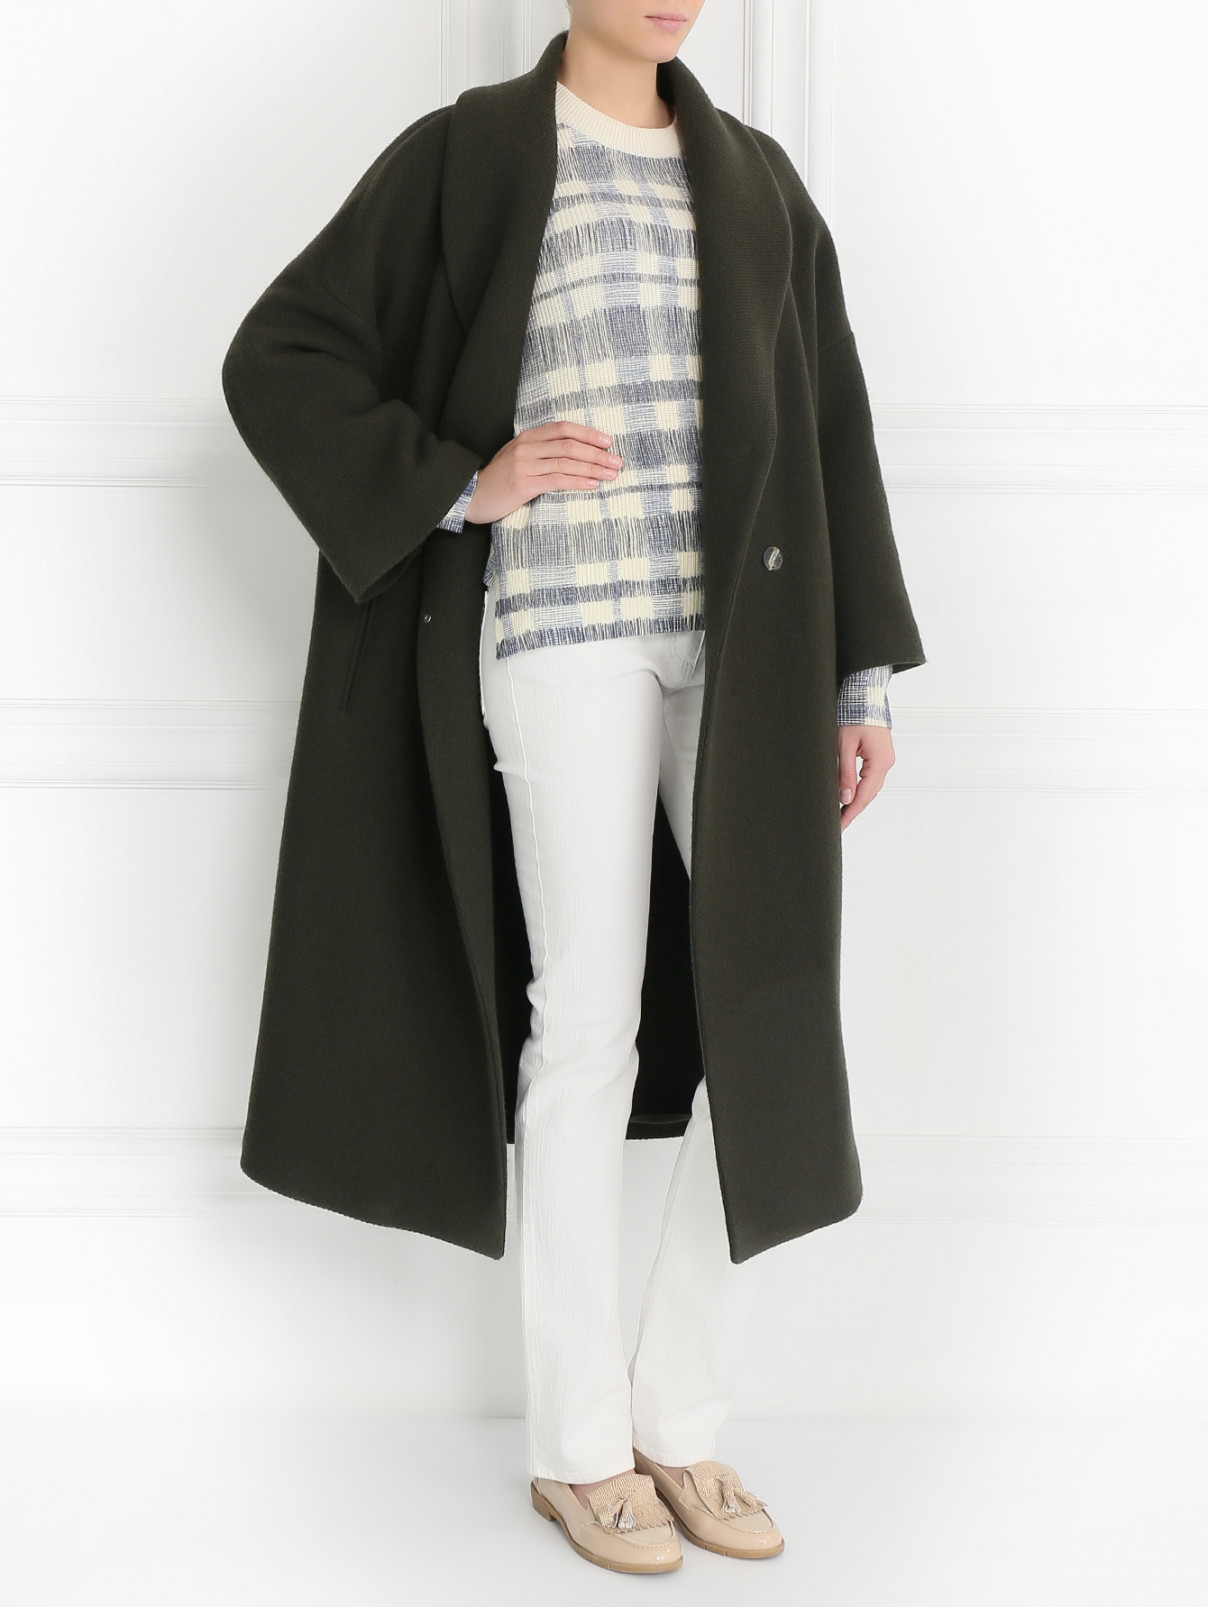 Пальто из шерсти и кашемира свободного кроя Alberta Ferretti  –  Модель Общий вид  – Цвет:  Зеленый